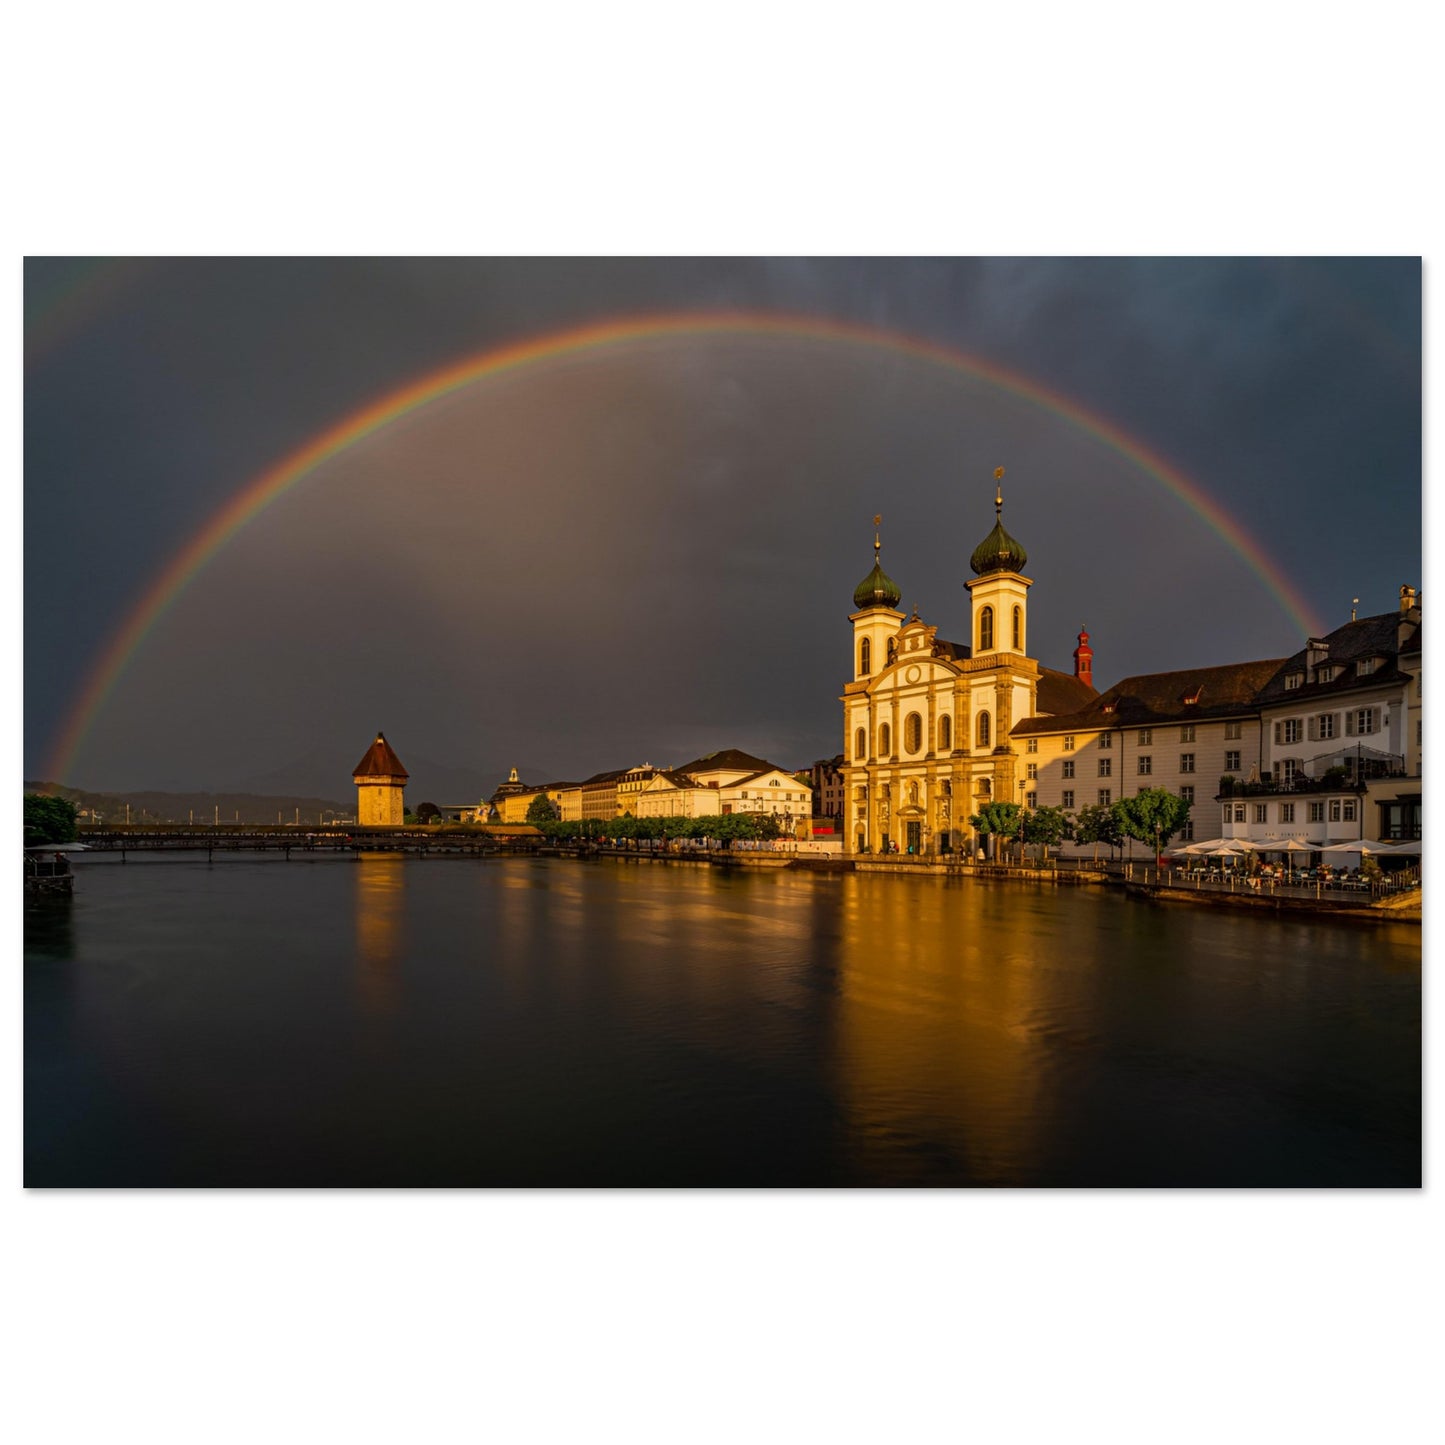 Regenbogen Luzern - Premium Poster